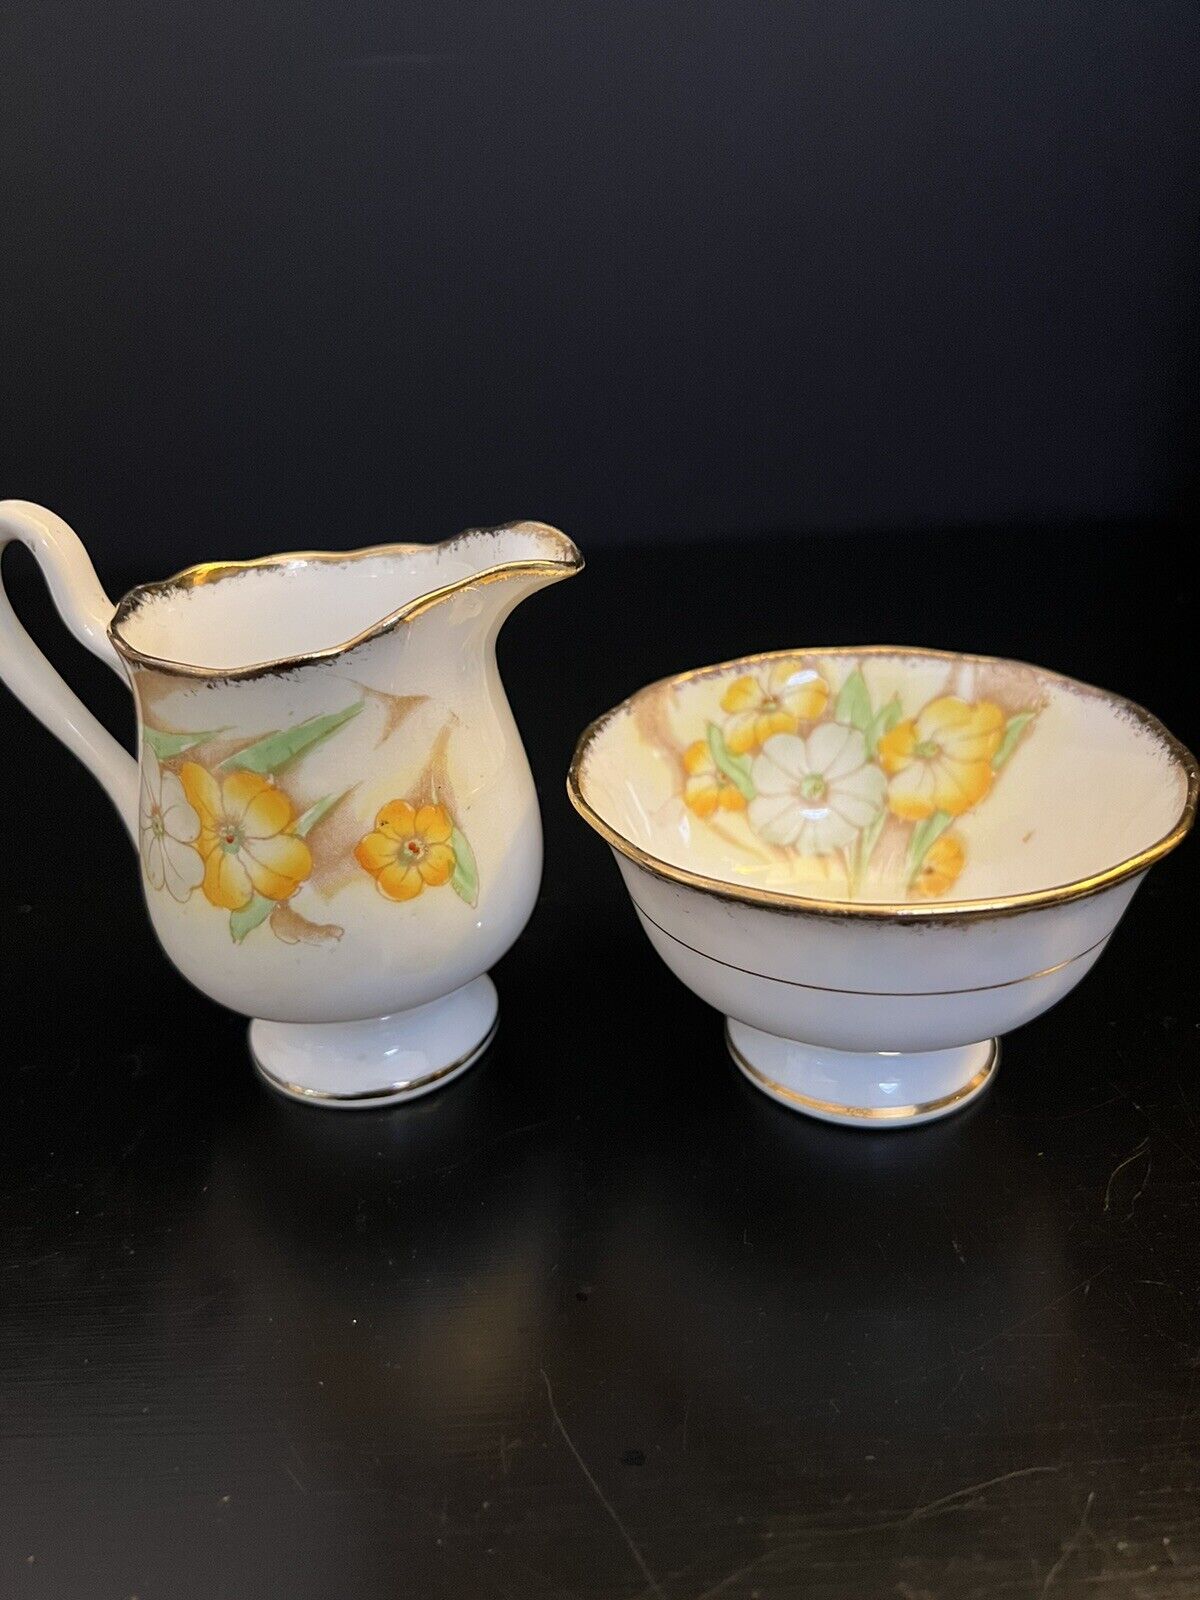 RARE Vintage Royal Albert Petunia Creamer and Sugar Bowl Set Yellow Gold Accents